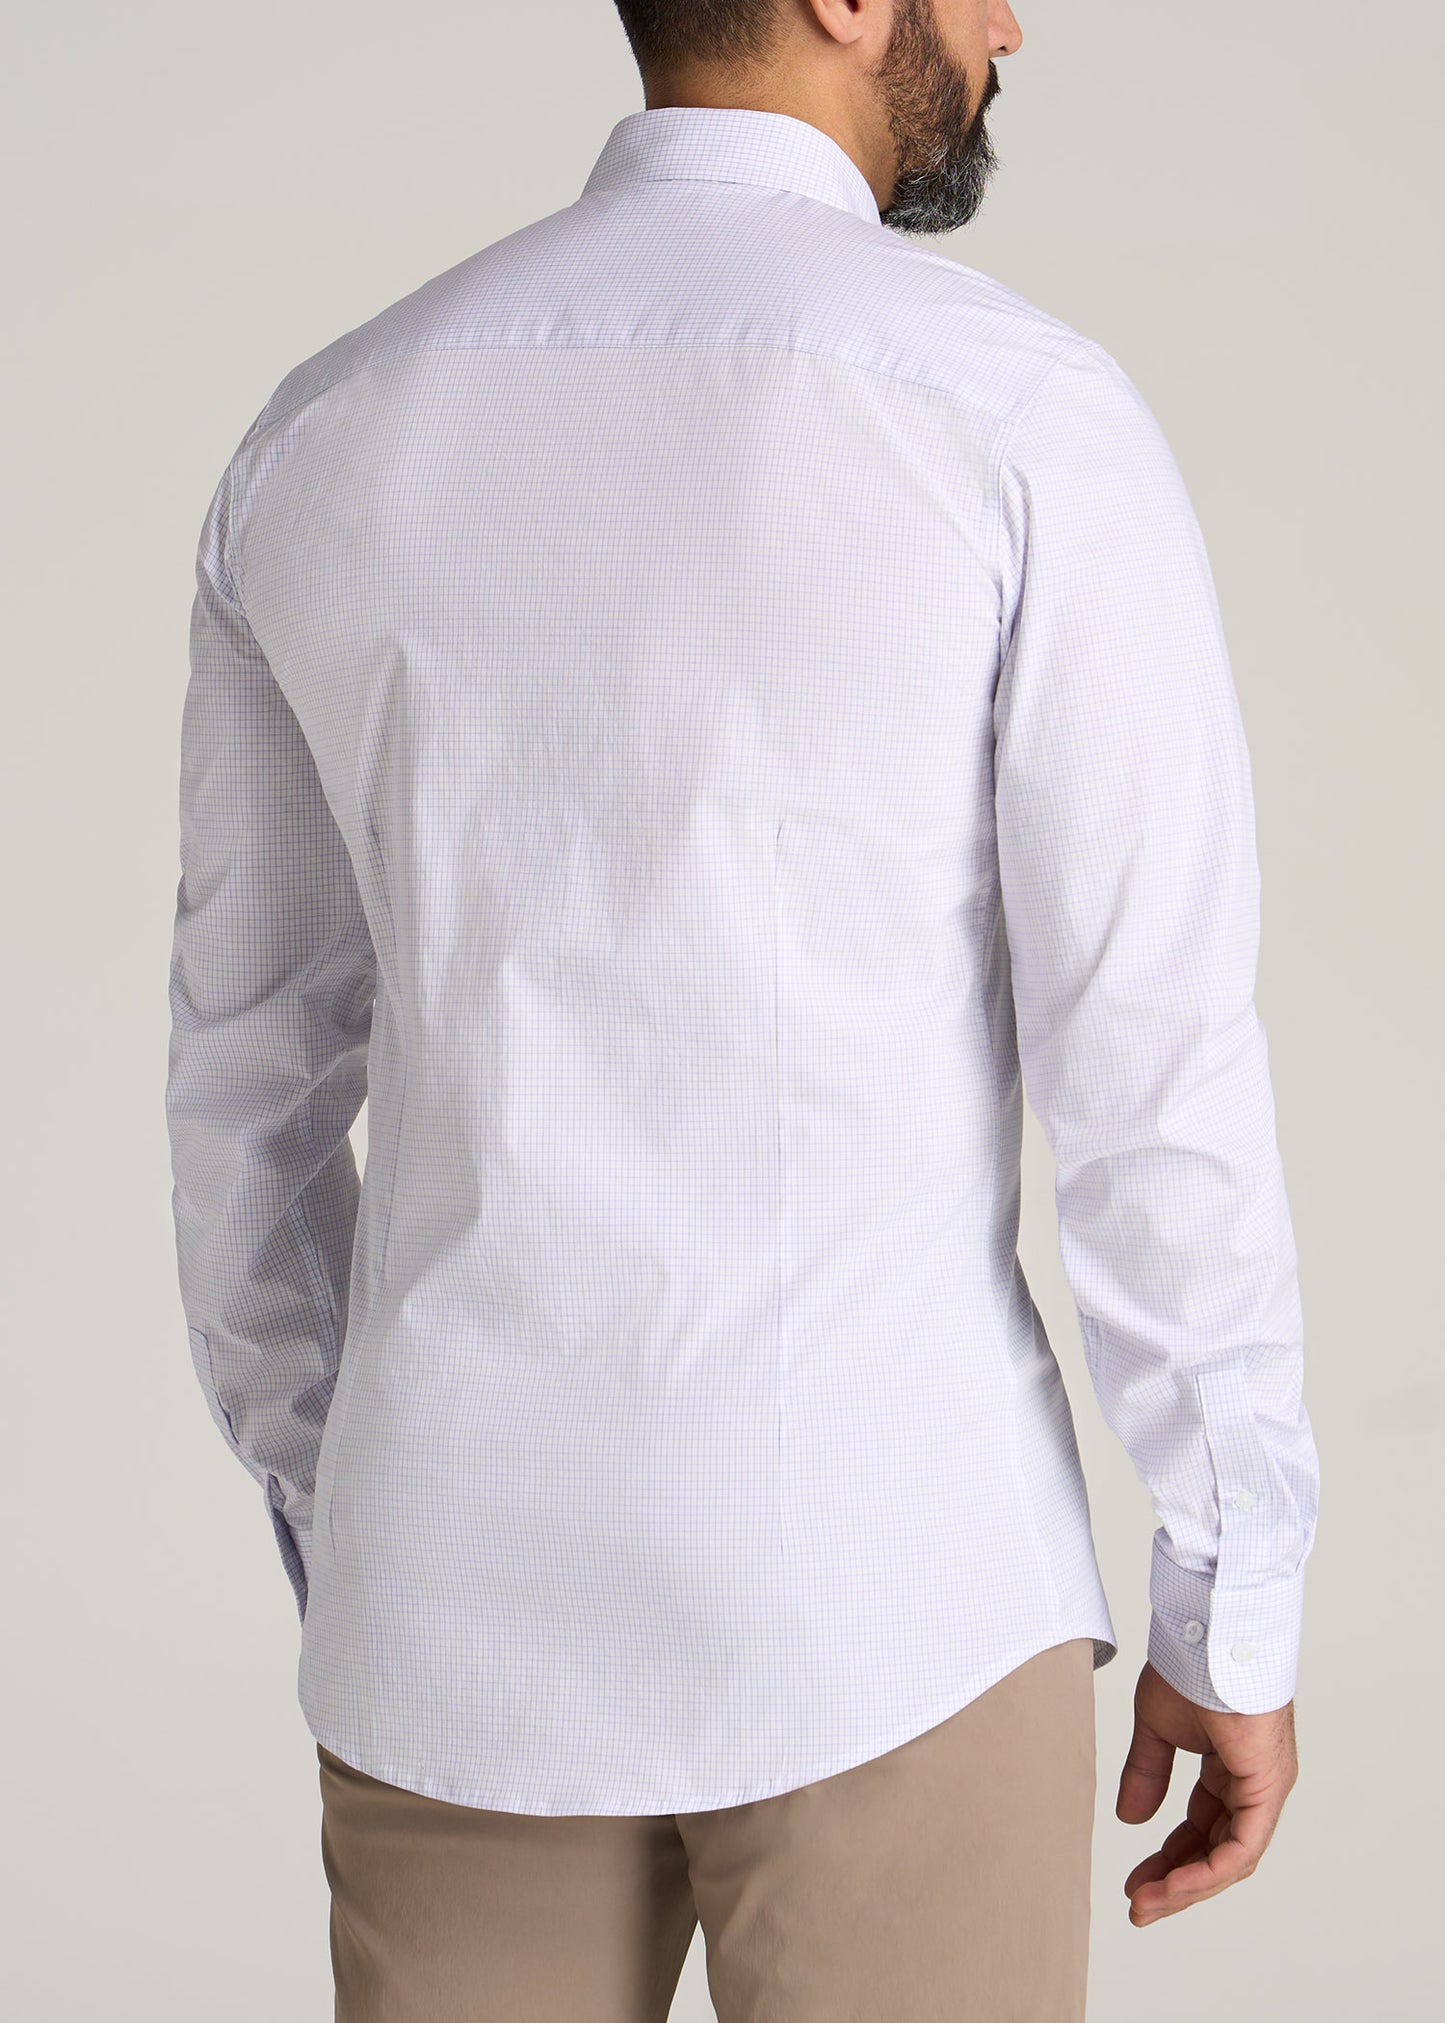 Oskar Button-Up Shirt for Tall Men in Iris Mini Check